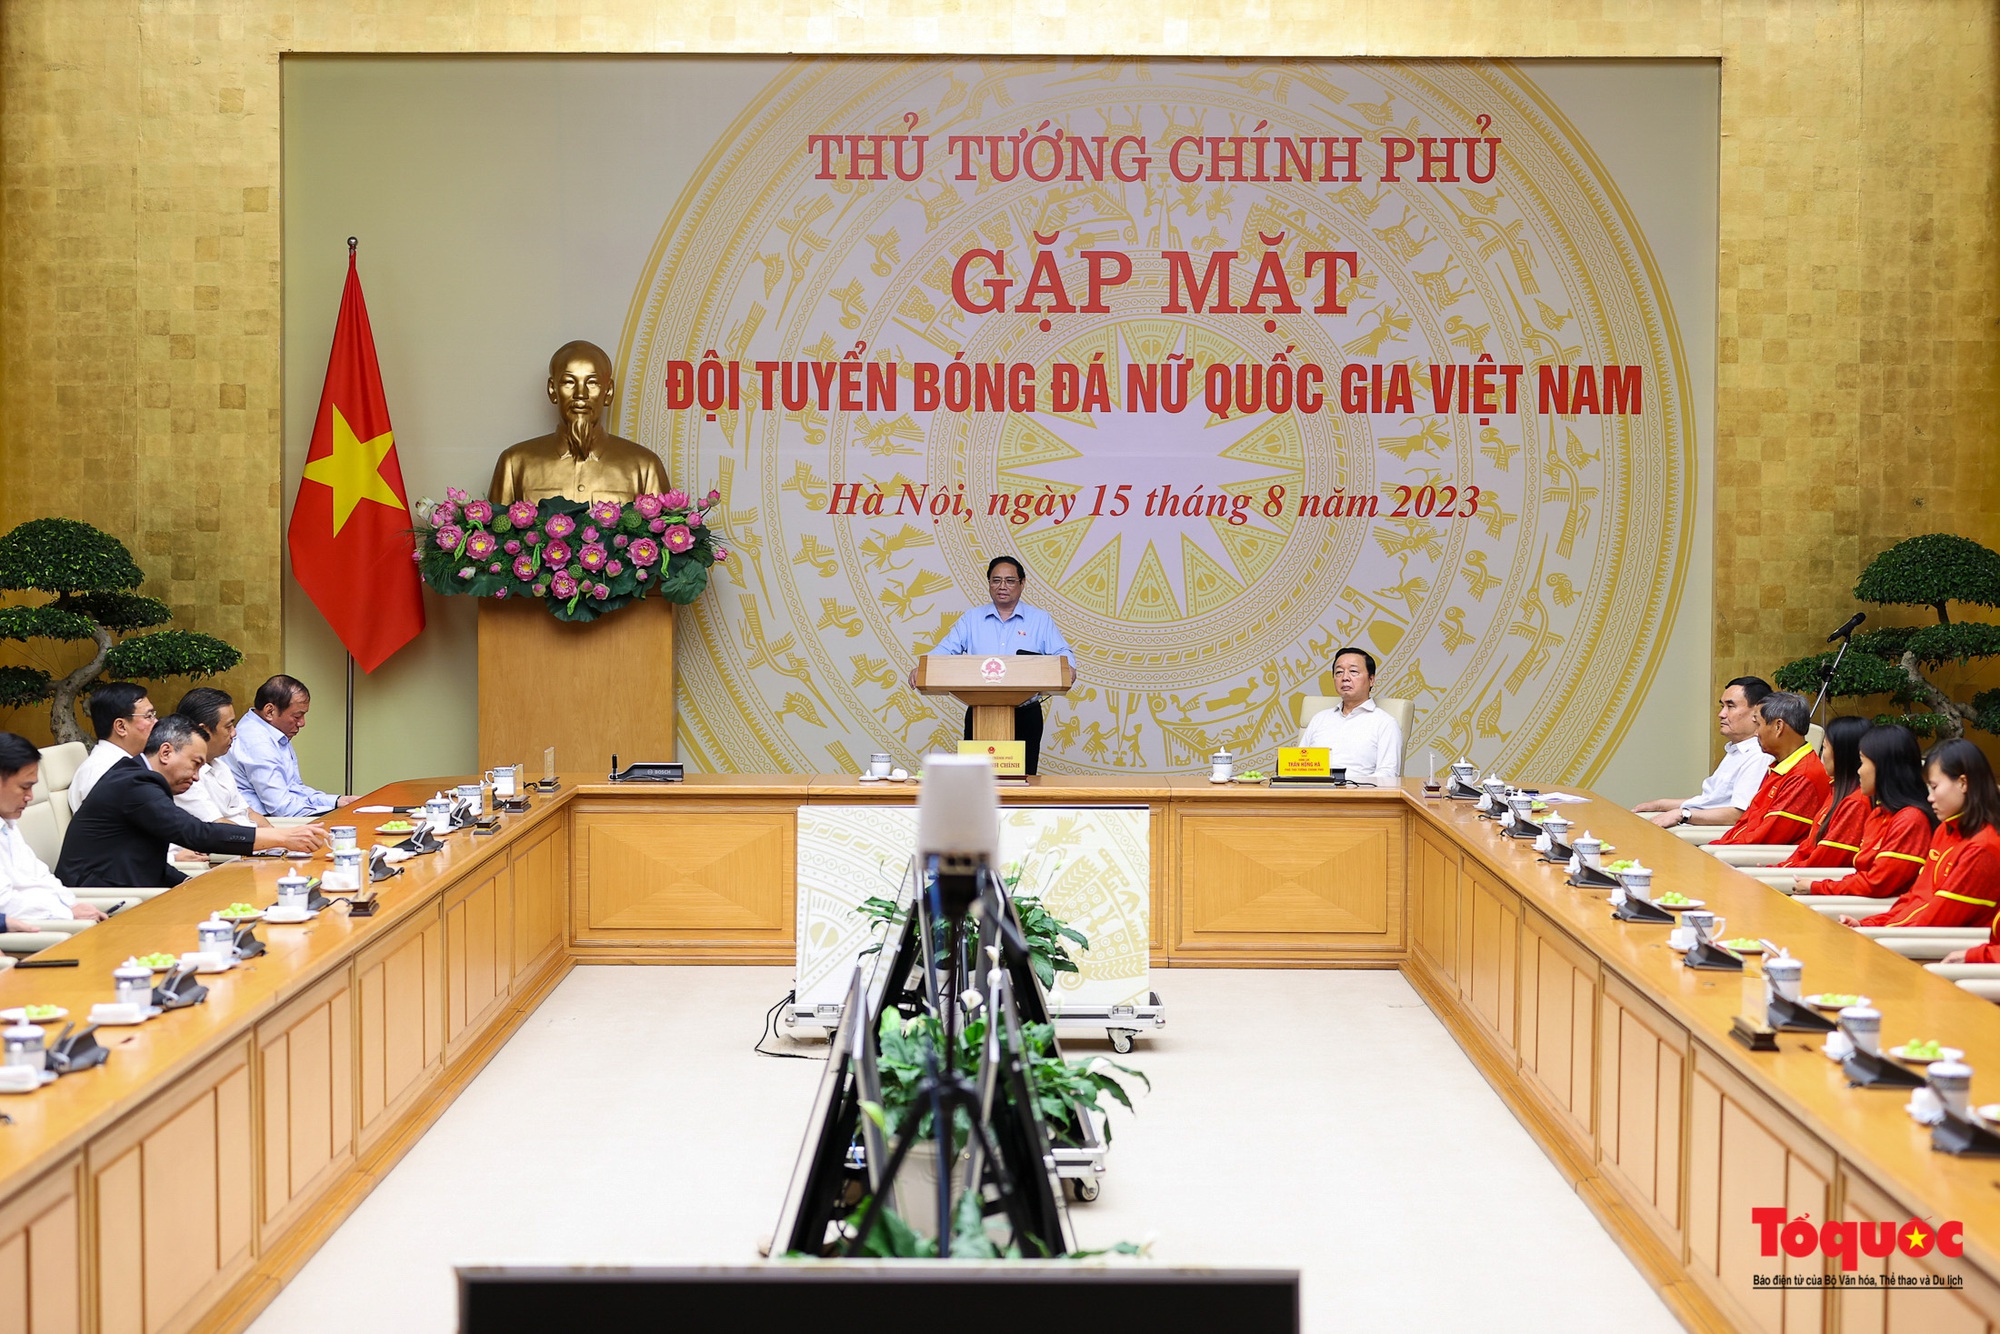 Chùm ảnh: Thủ tướng Phạm Minh Chính gặp mặt, biểu dương Đội tuyển bóng đá nữ Quốc gia Việt Nam - Ảnh 6.